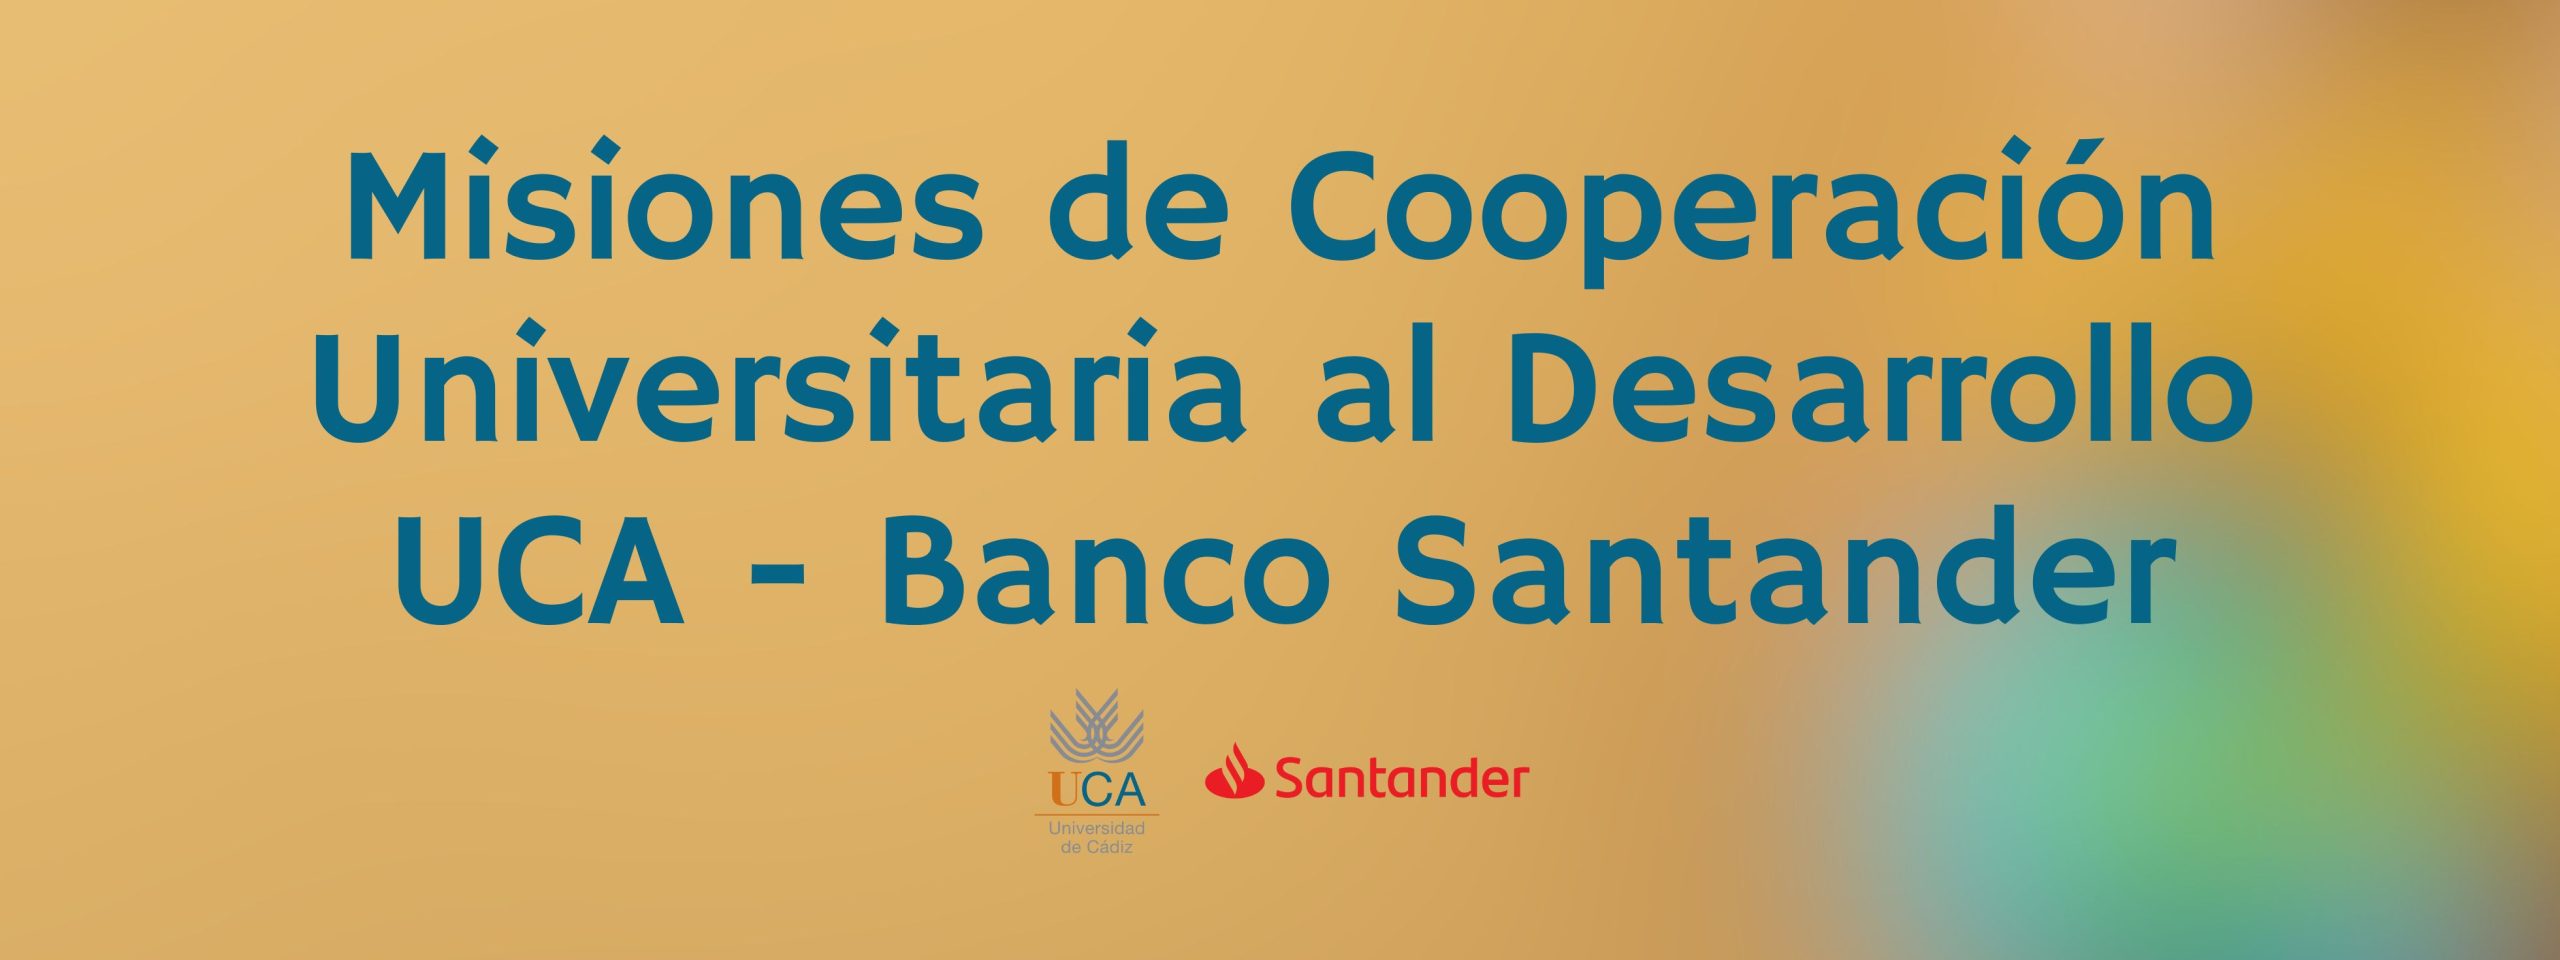 Publicada la convocatoria de Misiones de Cooperación Universitaria al Desarrollo UCA – Banco Santander